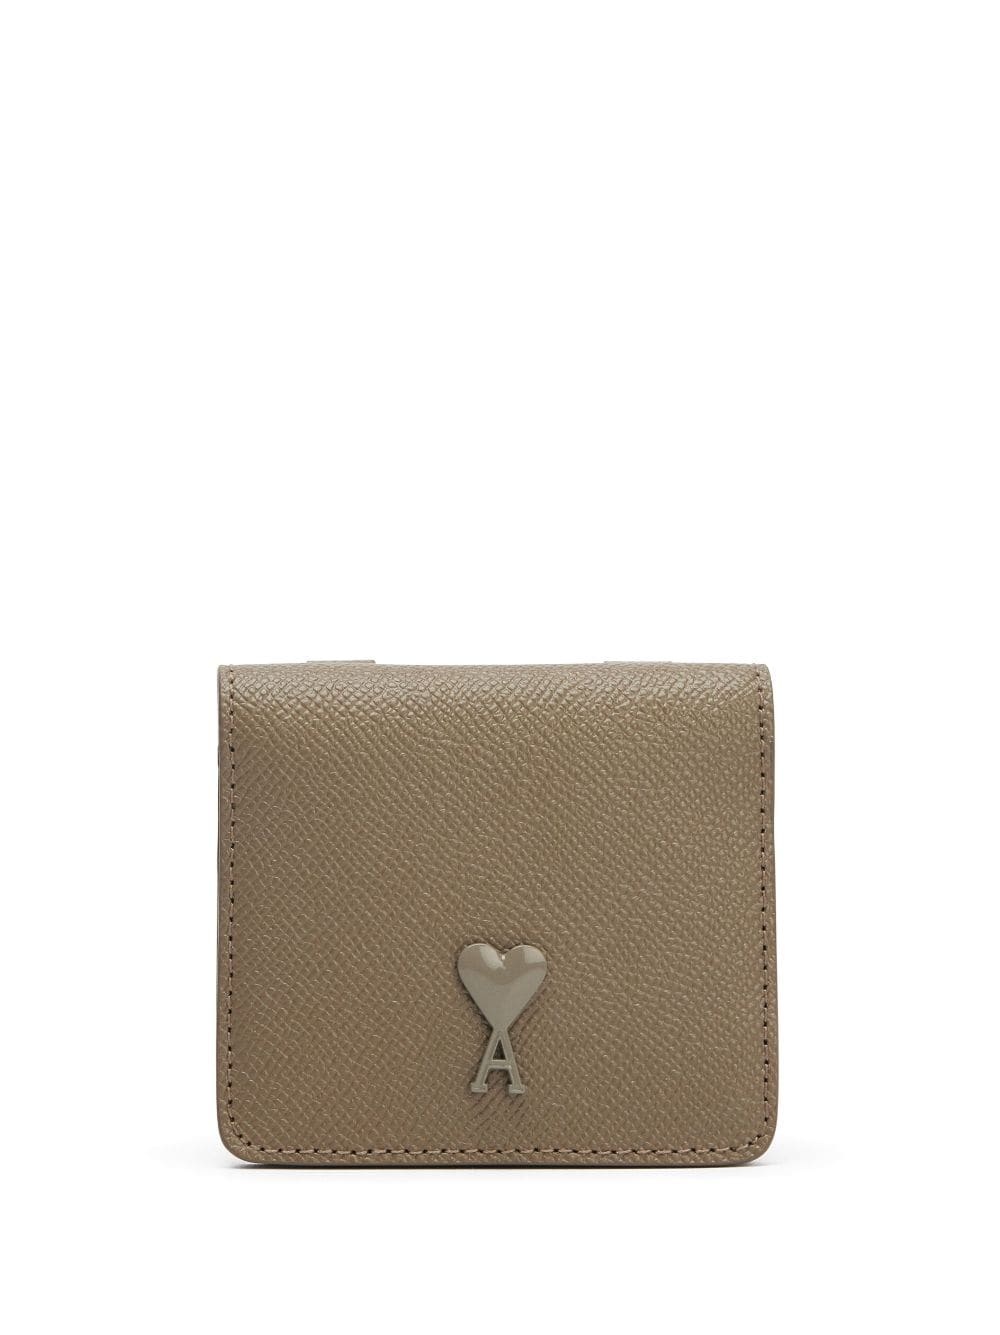 logo strap wallet - 1